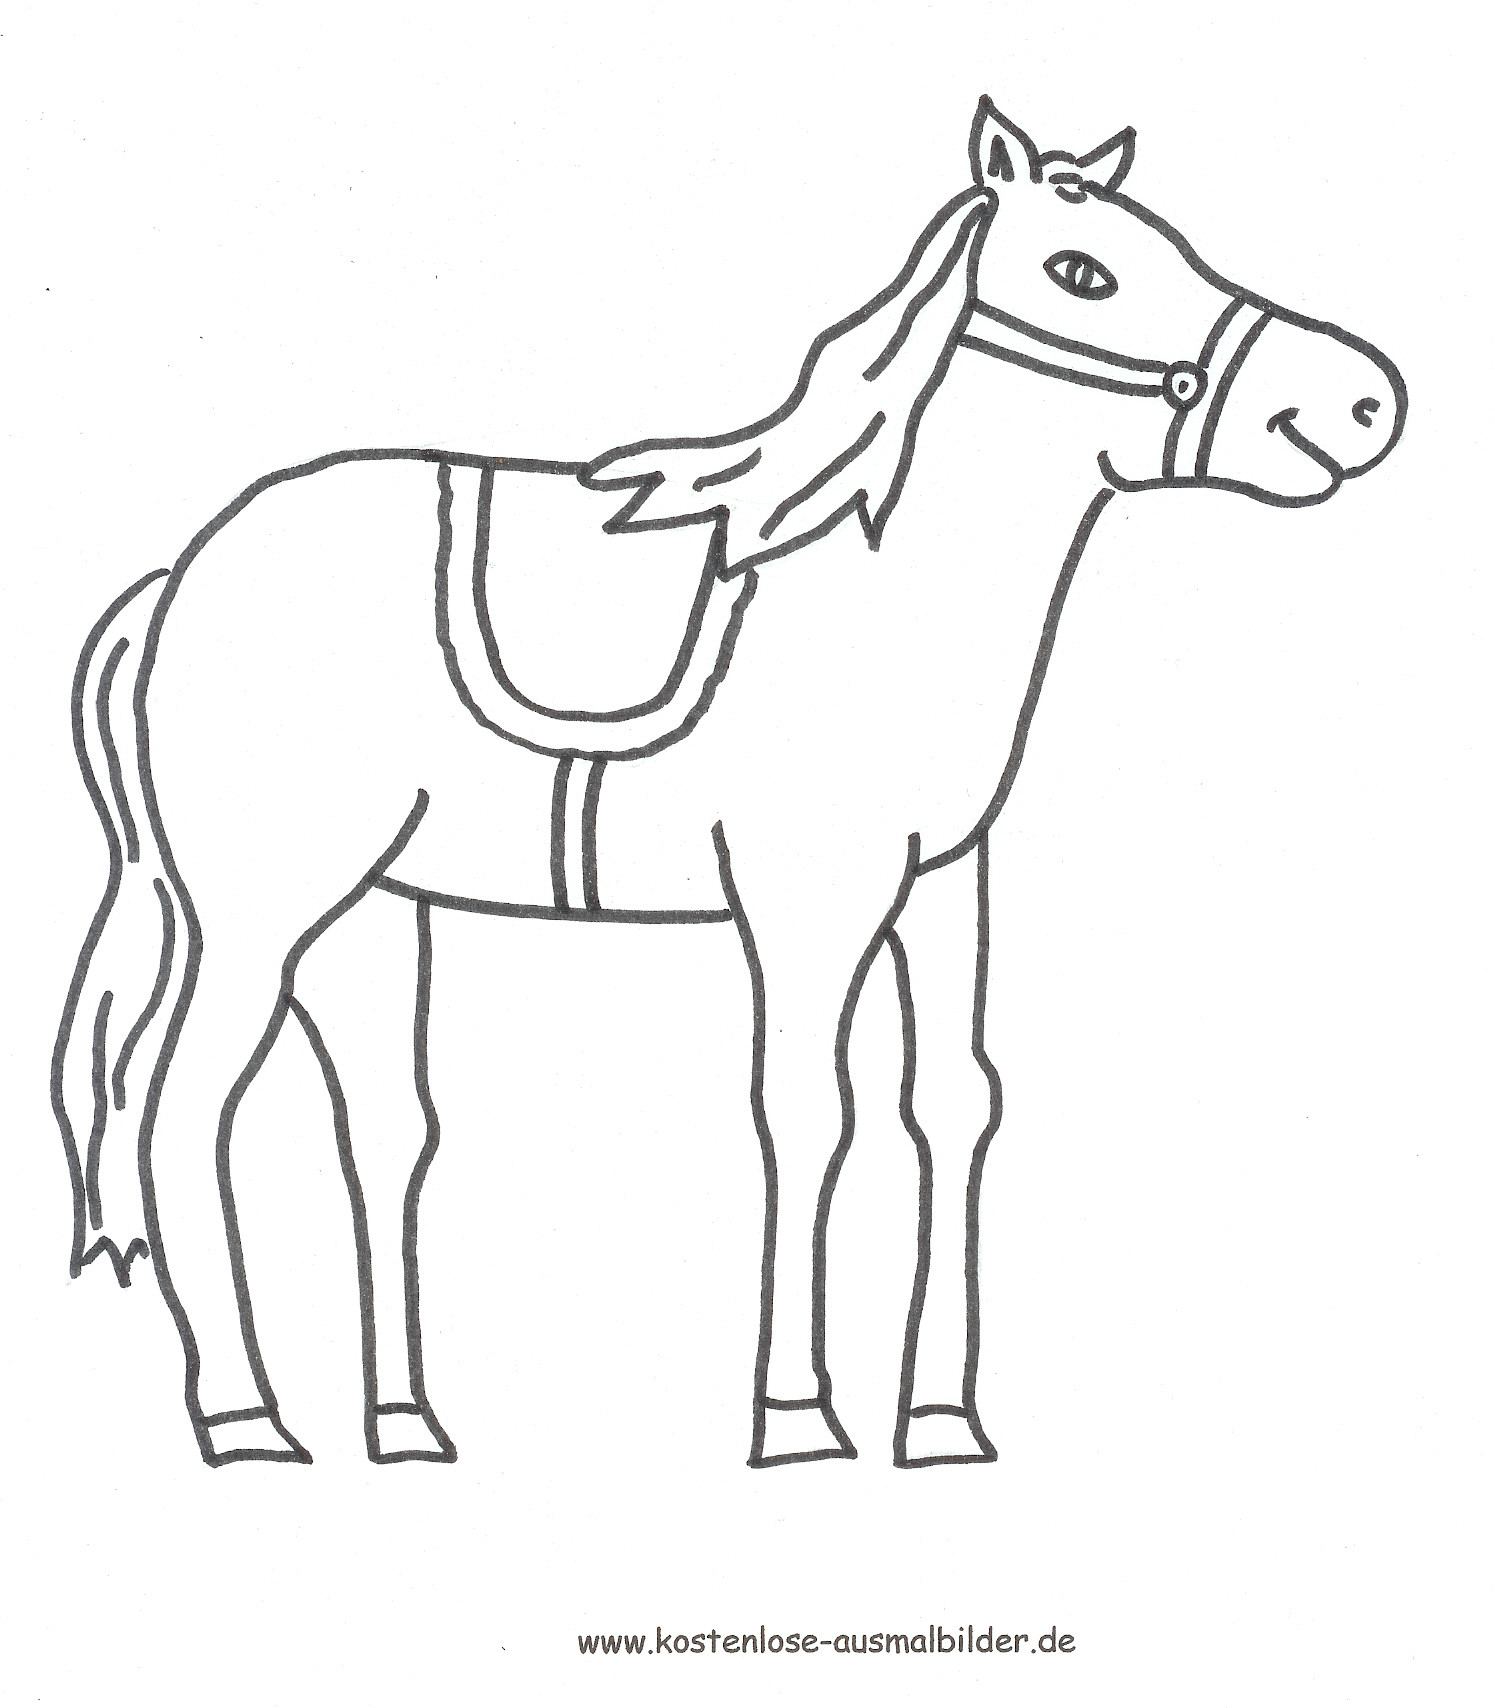 Ausmalbilder Pferd Kostenlos
 Ausmalbilder pferd kostenlos Malvorlagen zum ausdrucken